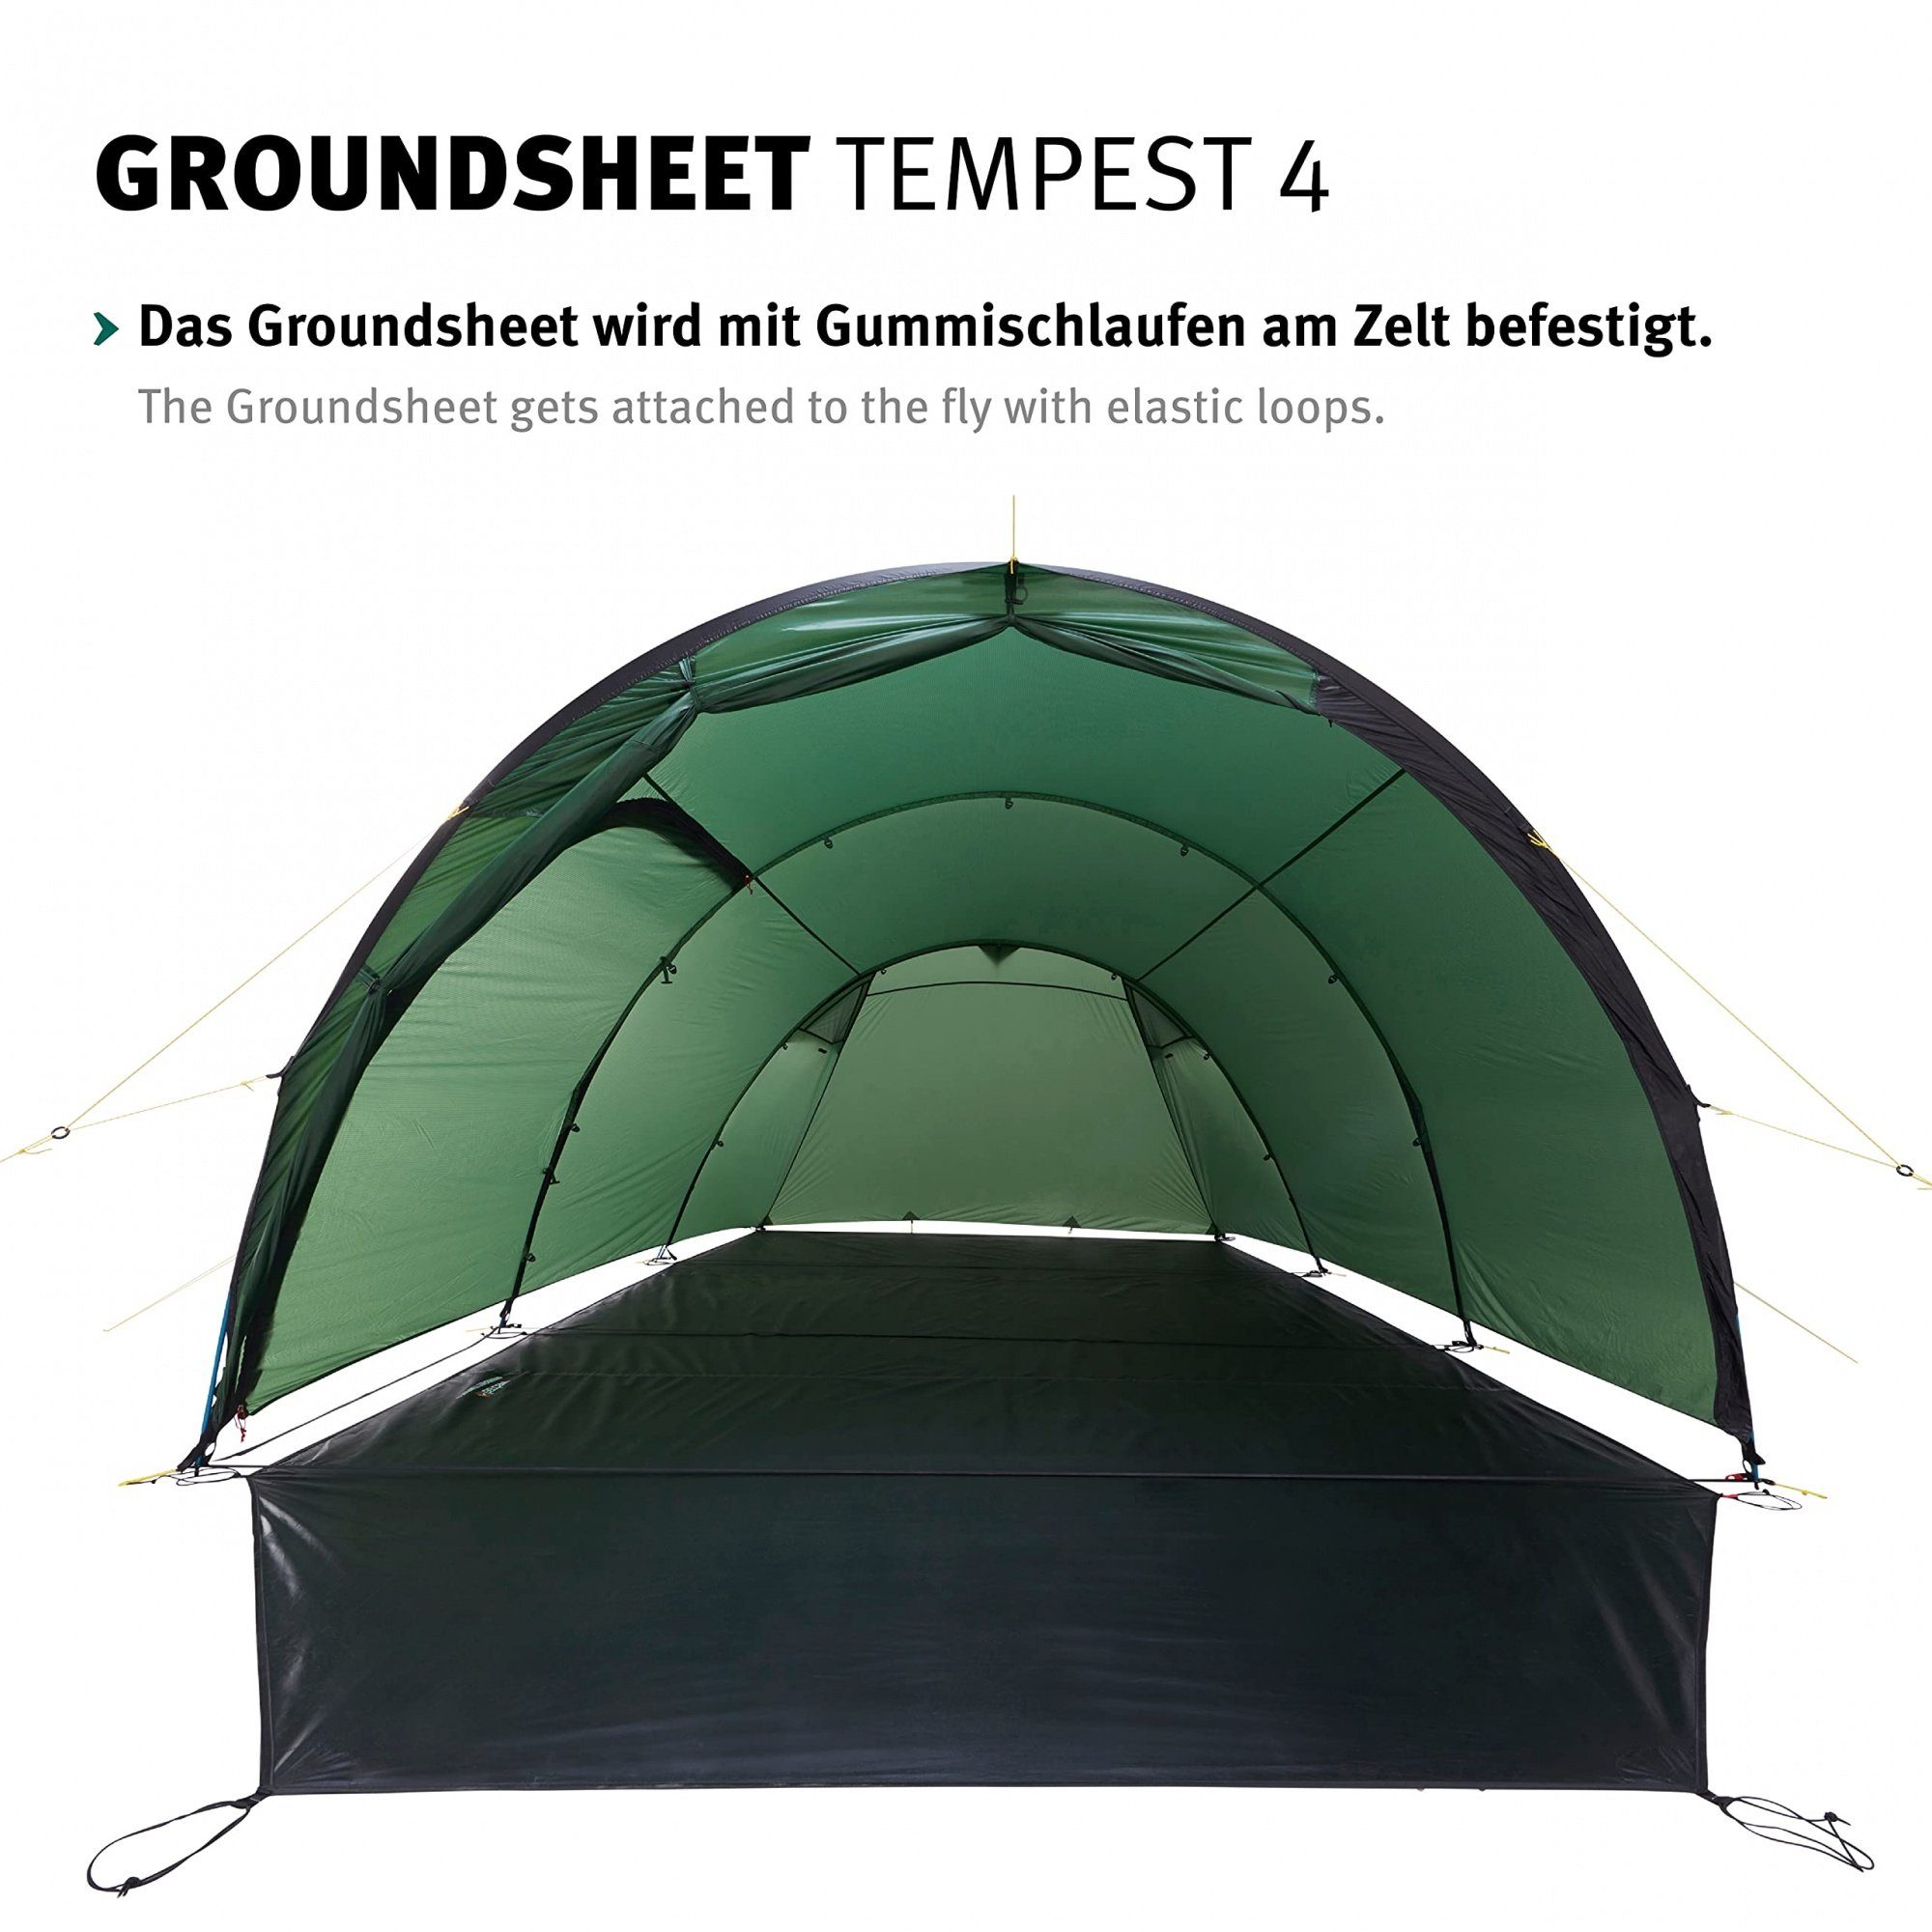 Tempest 4 für Tents Zeltunterlage Groundsheet Zelt Wechsel das